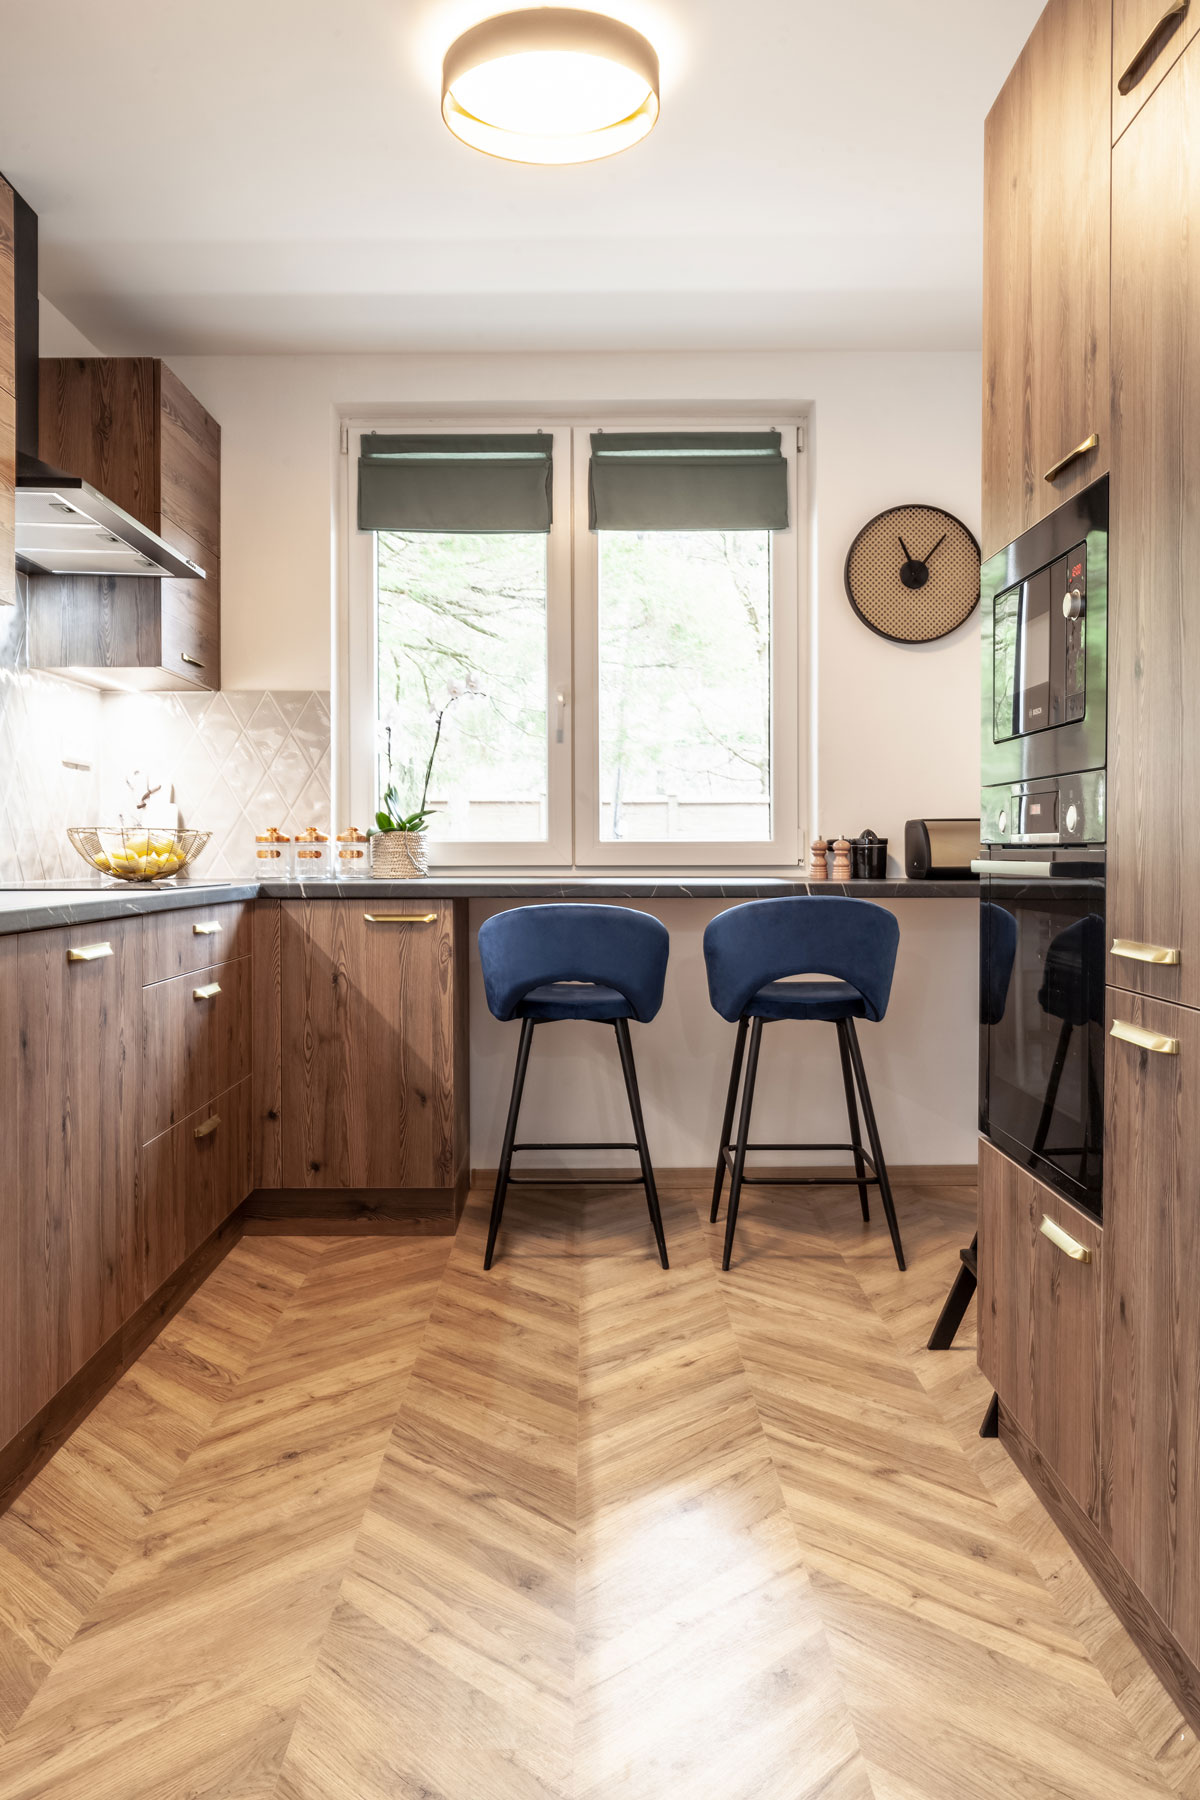 klasická moderná kuchyňa v tmavom drevodekore, nábytok v kuchyni má zlaté úchytky, pri pracovnej doske pod oknom sú dve barové stoličky v modrom zamate